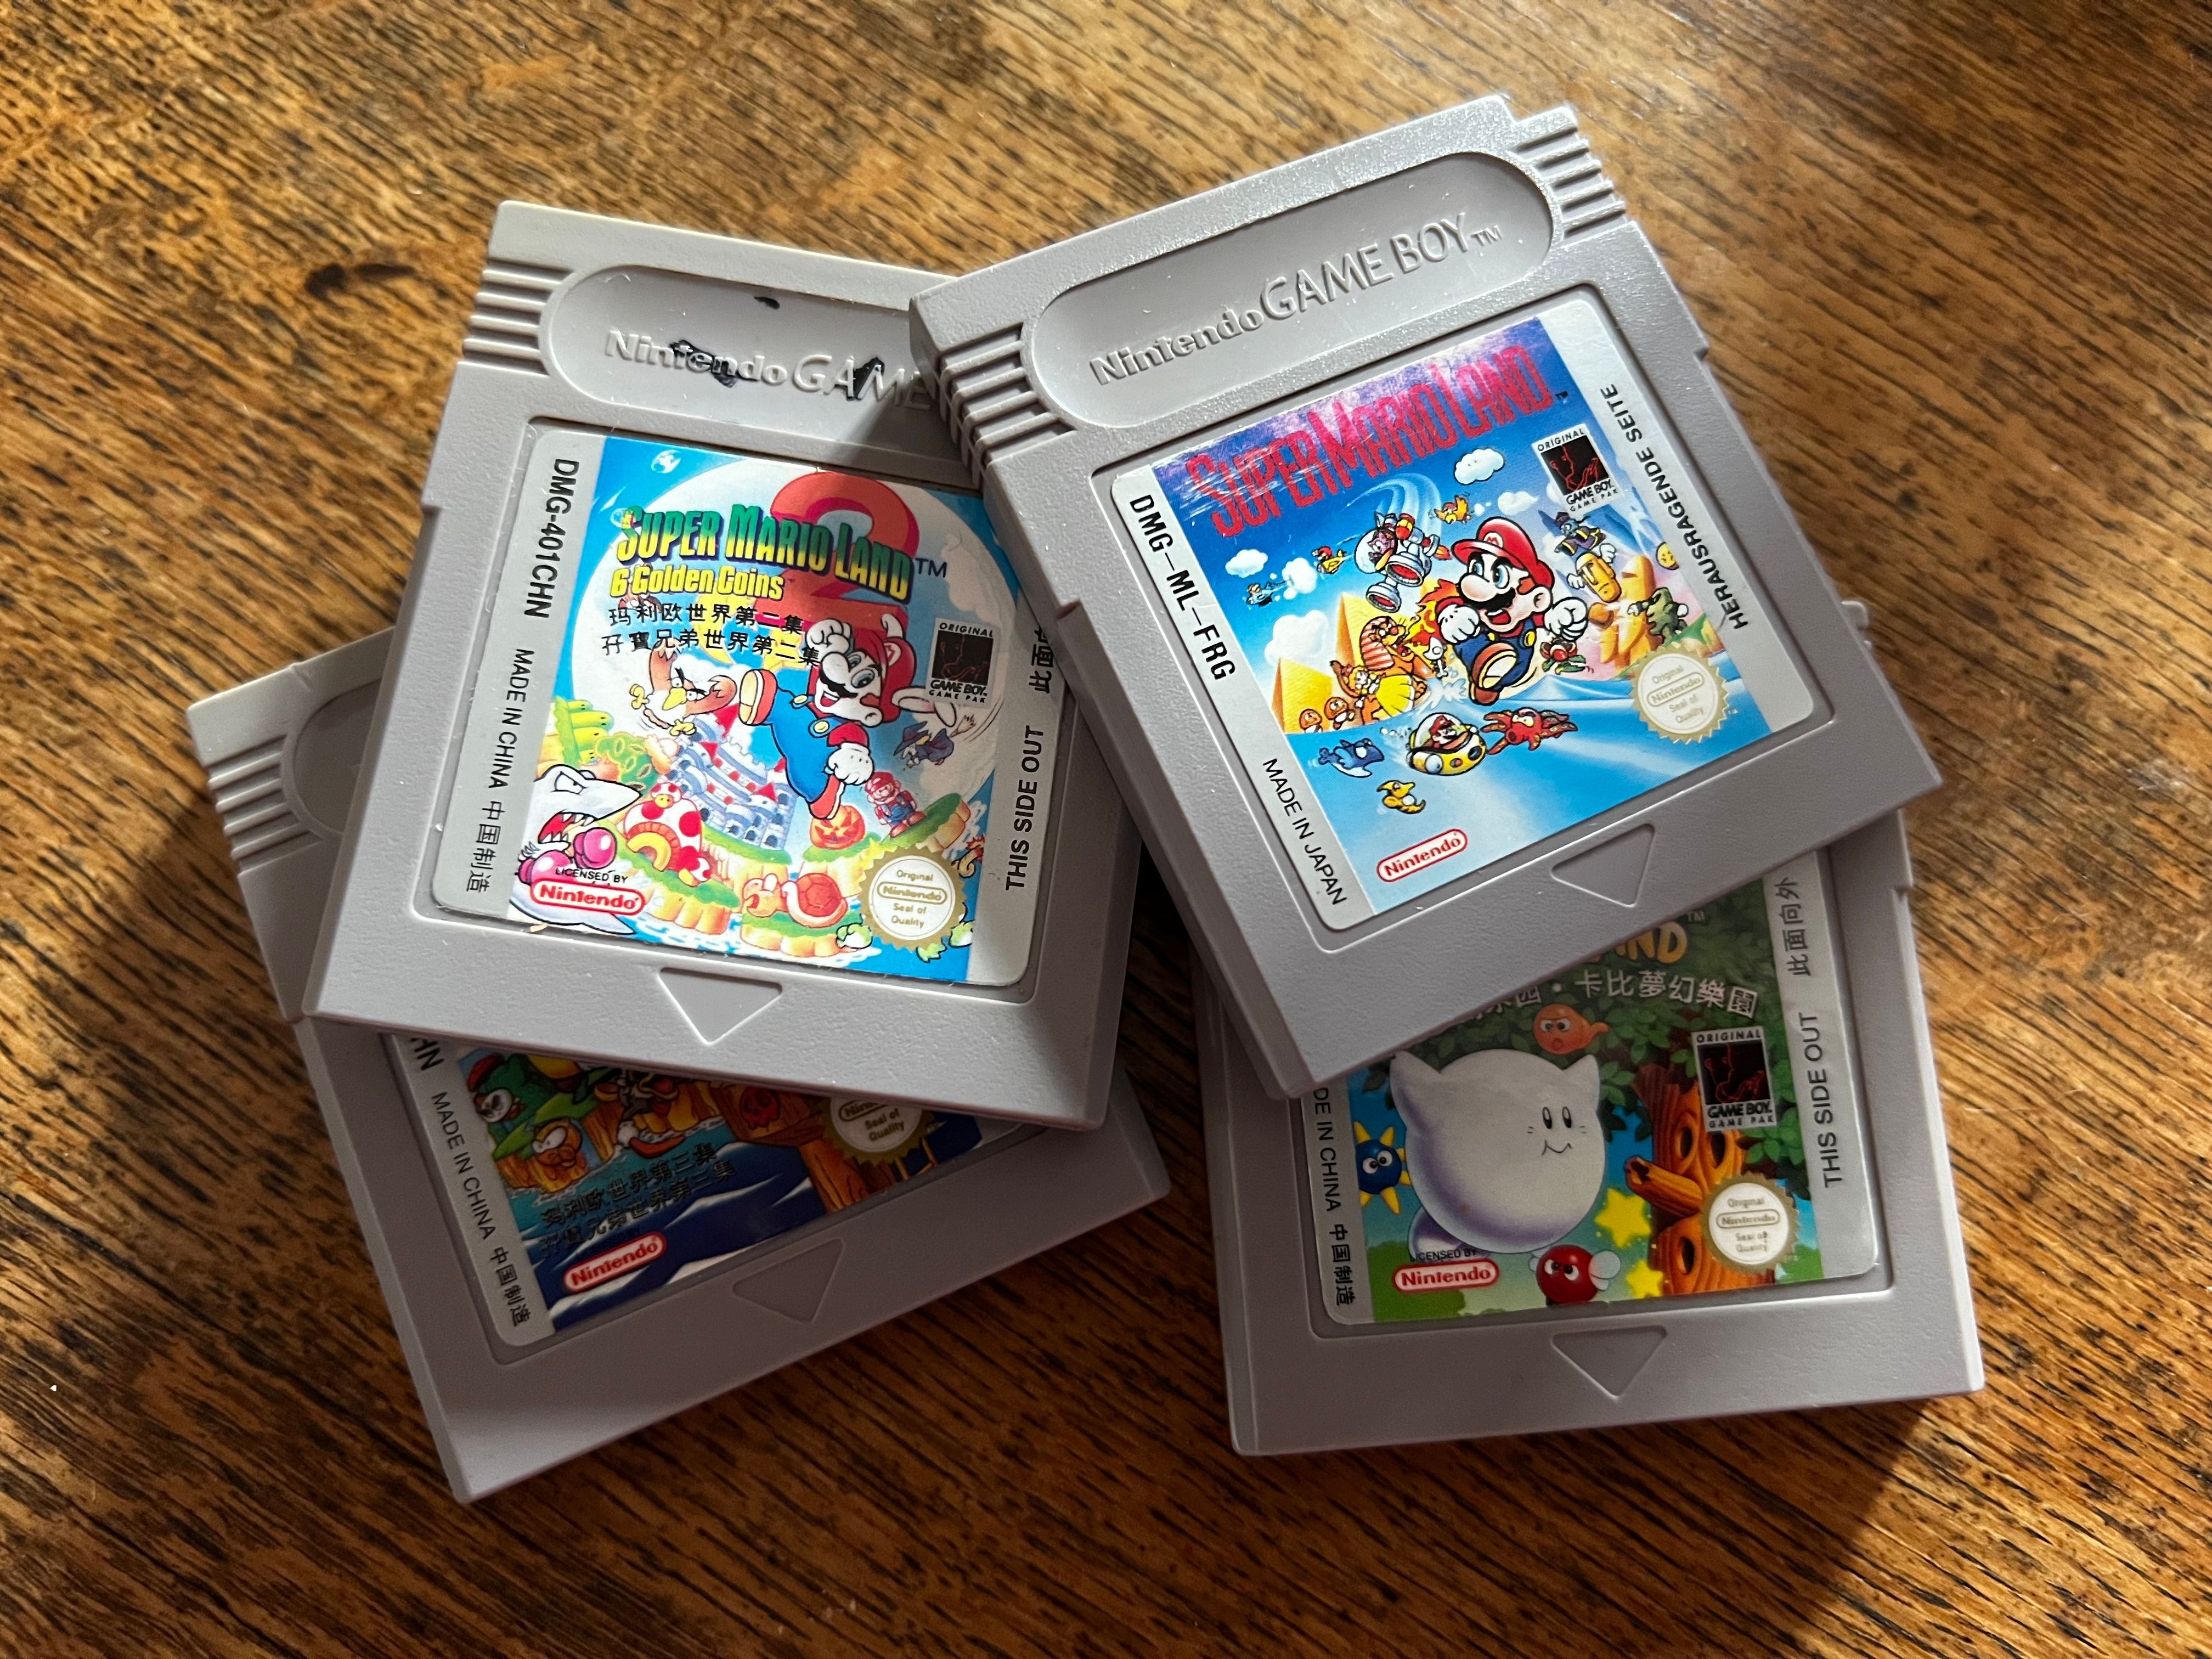 Original Game Boy cartridges.